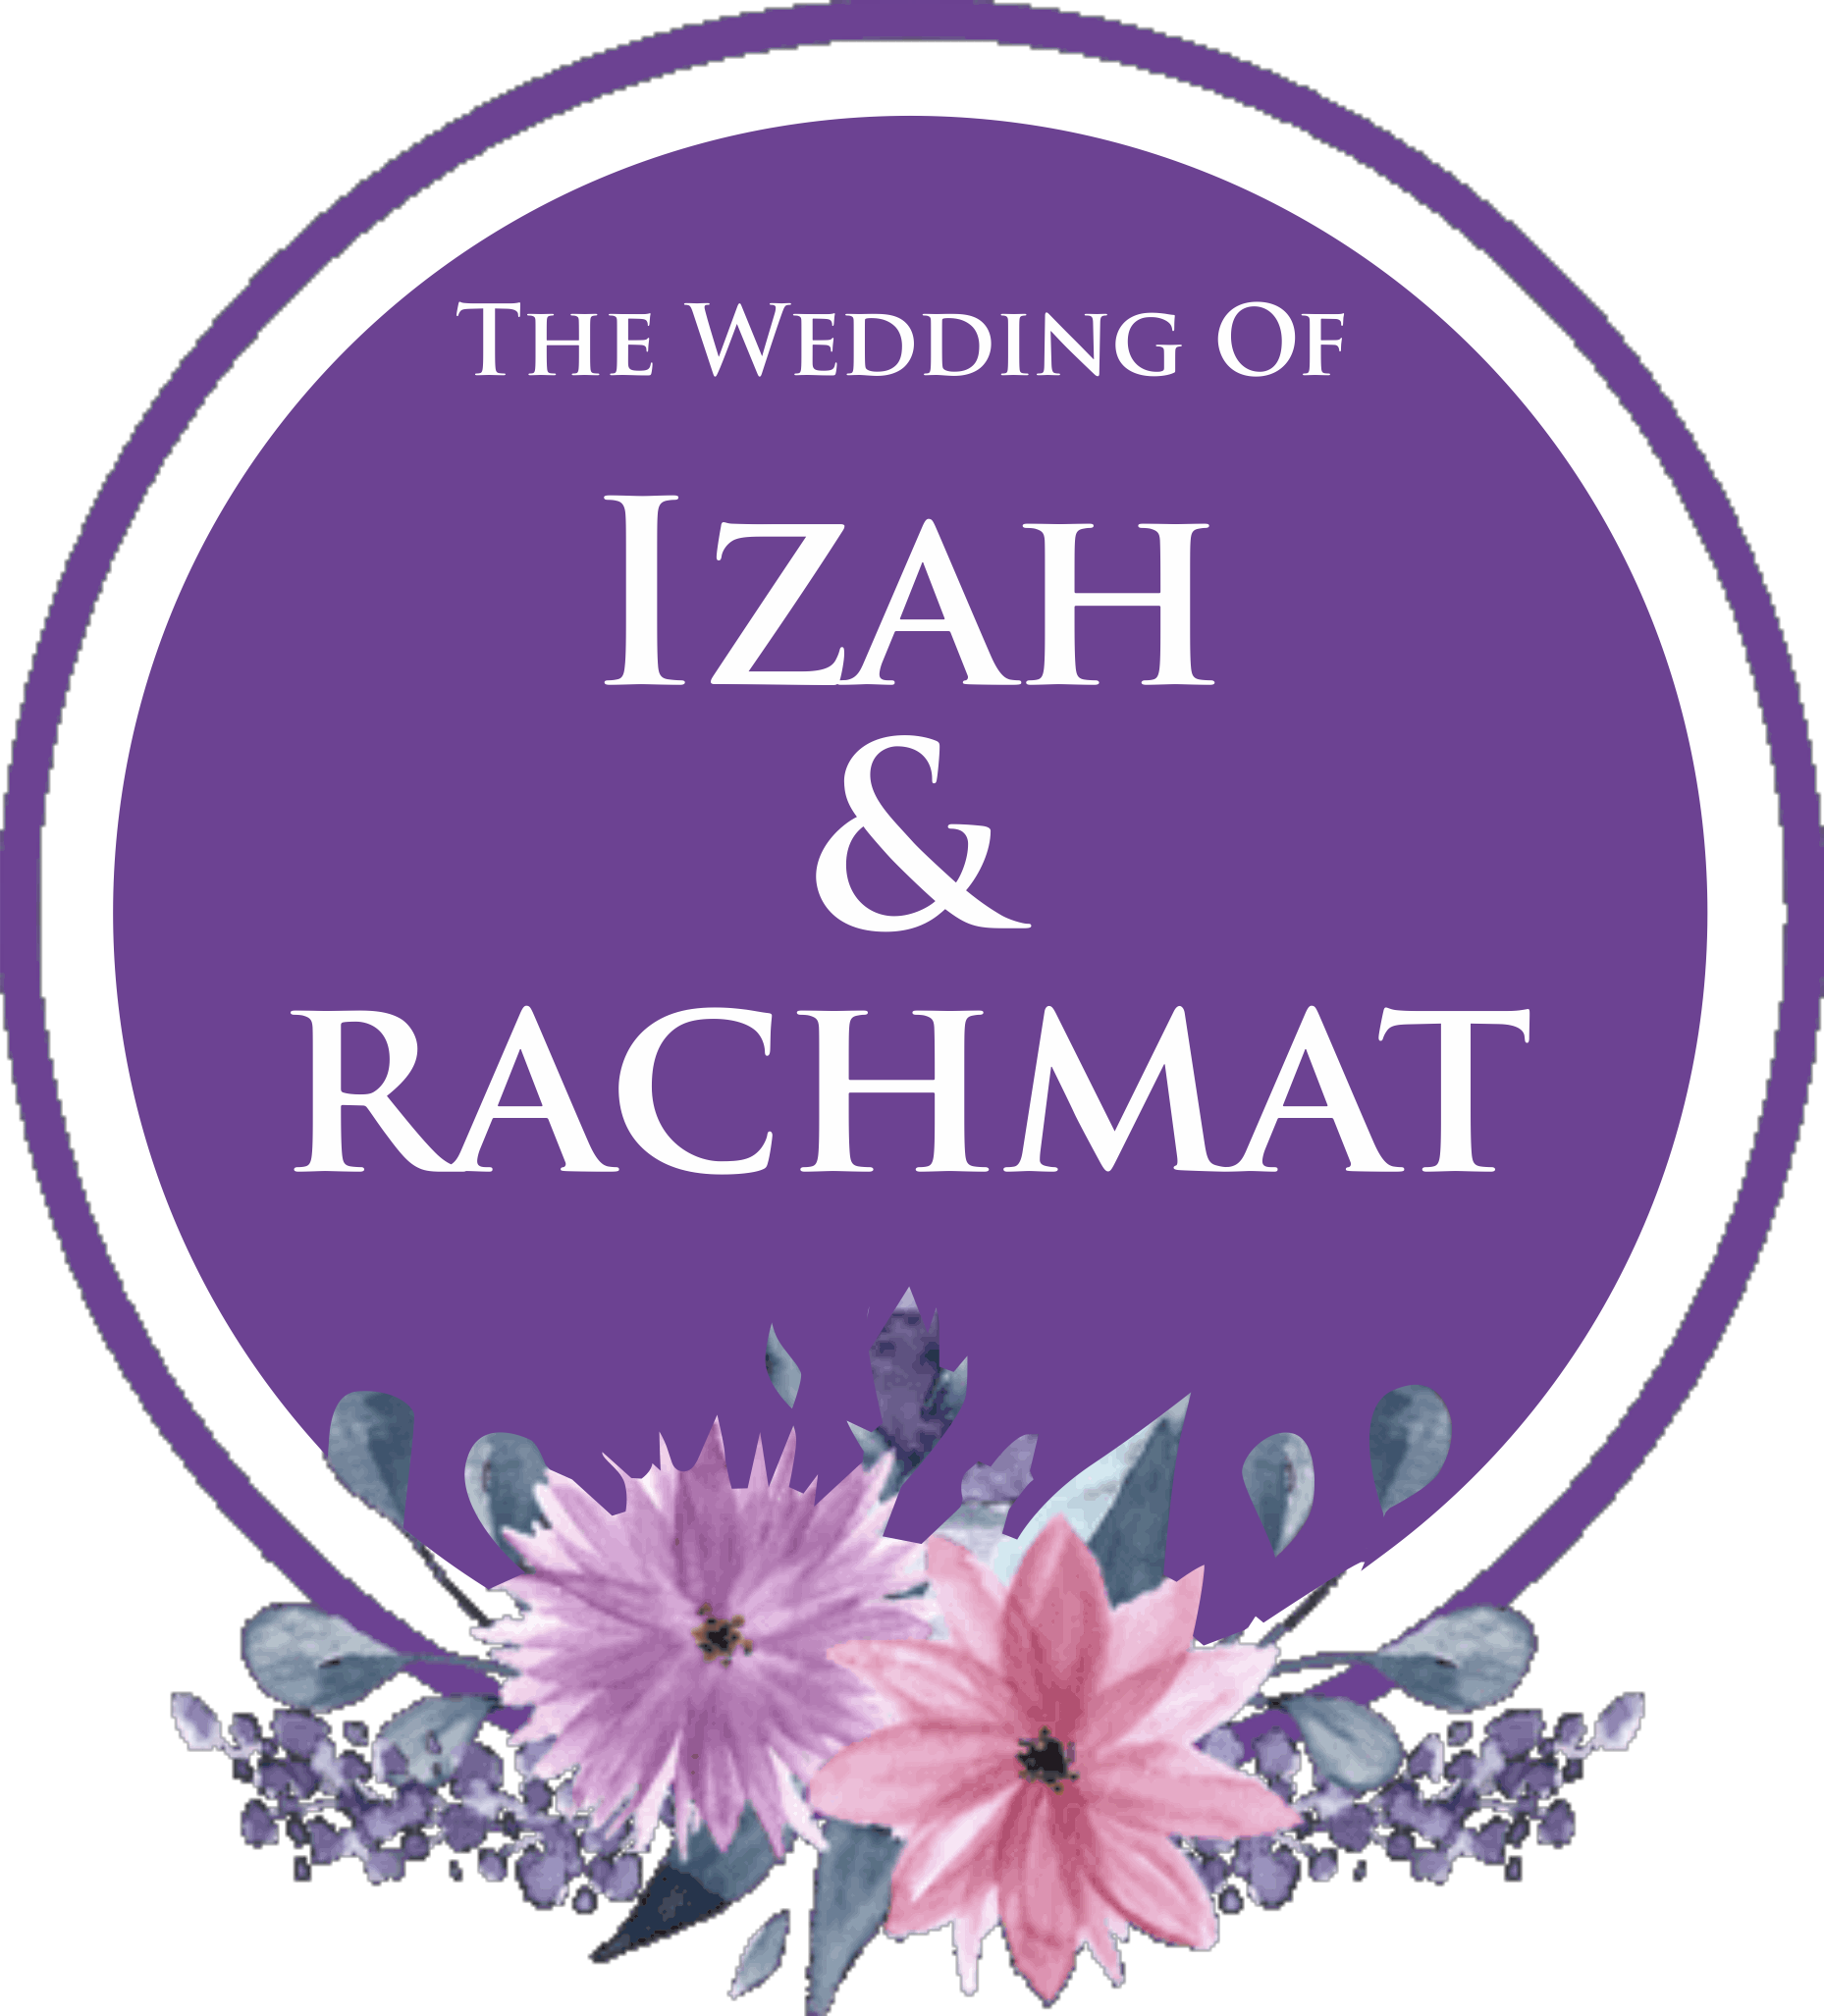 IZAH & RACHMAT